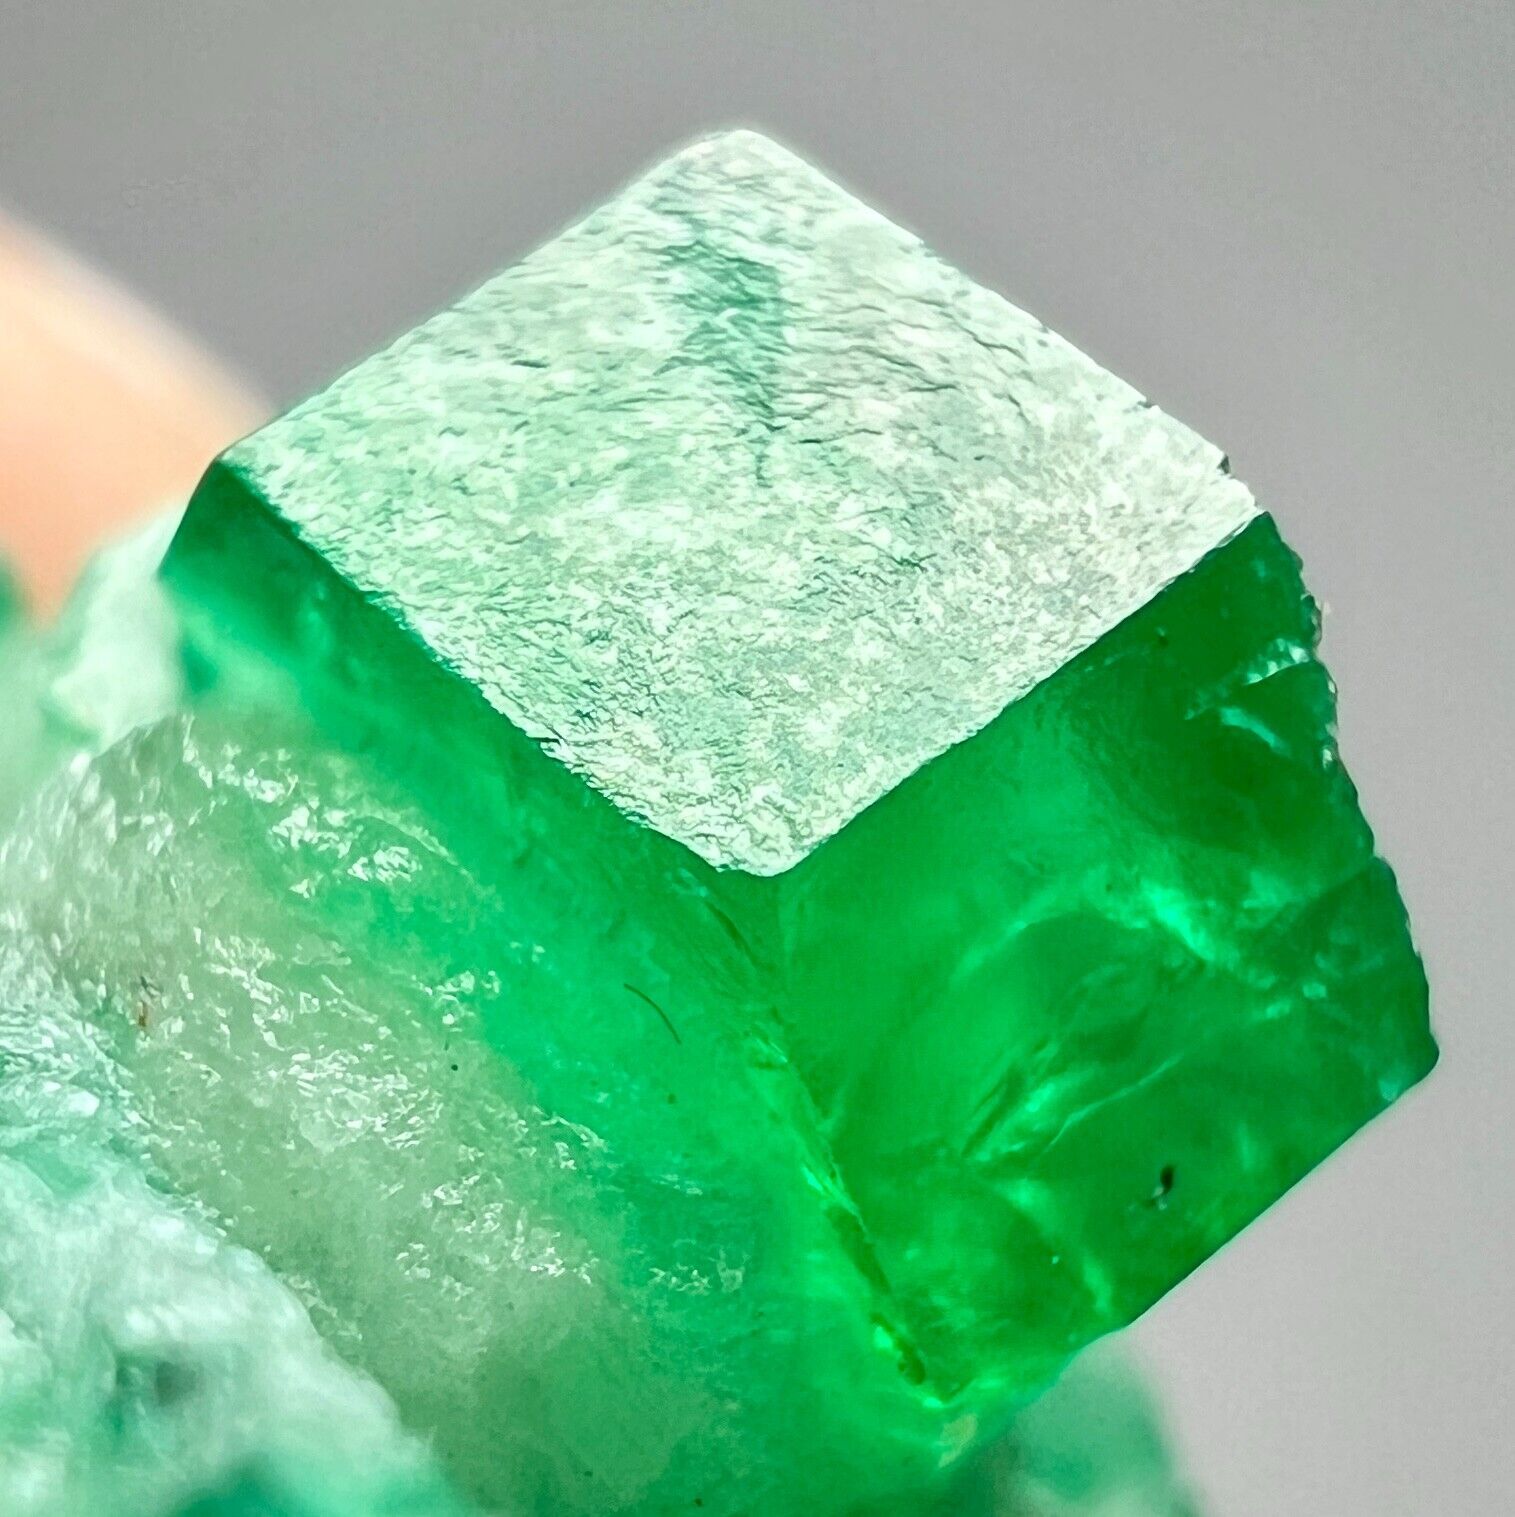 Exquisite Top Green Color Swat Emerald Crystals Bunch Piece. Swat, PAK 7 CT.